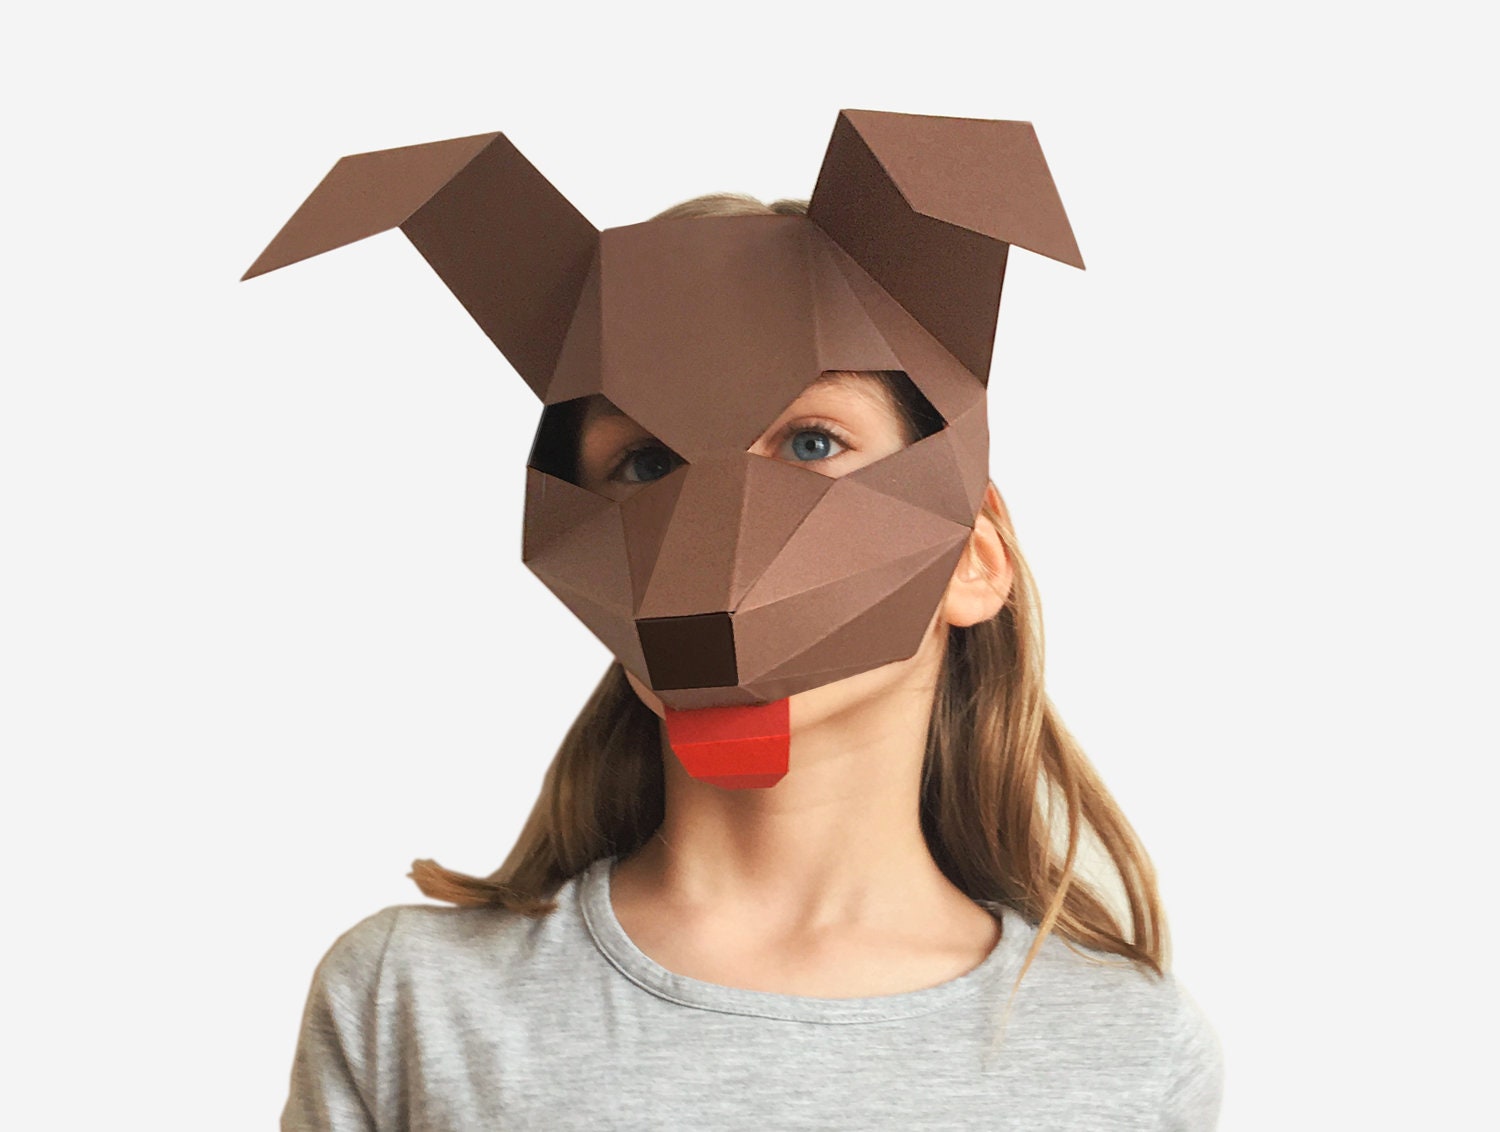 Kitten Cat Mask DIY Paper Mask Template – Lapa Studios